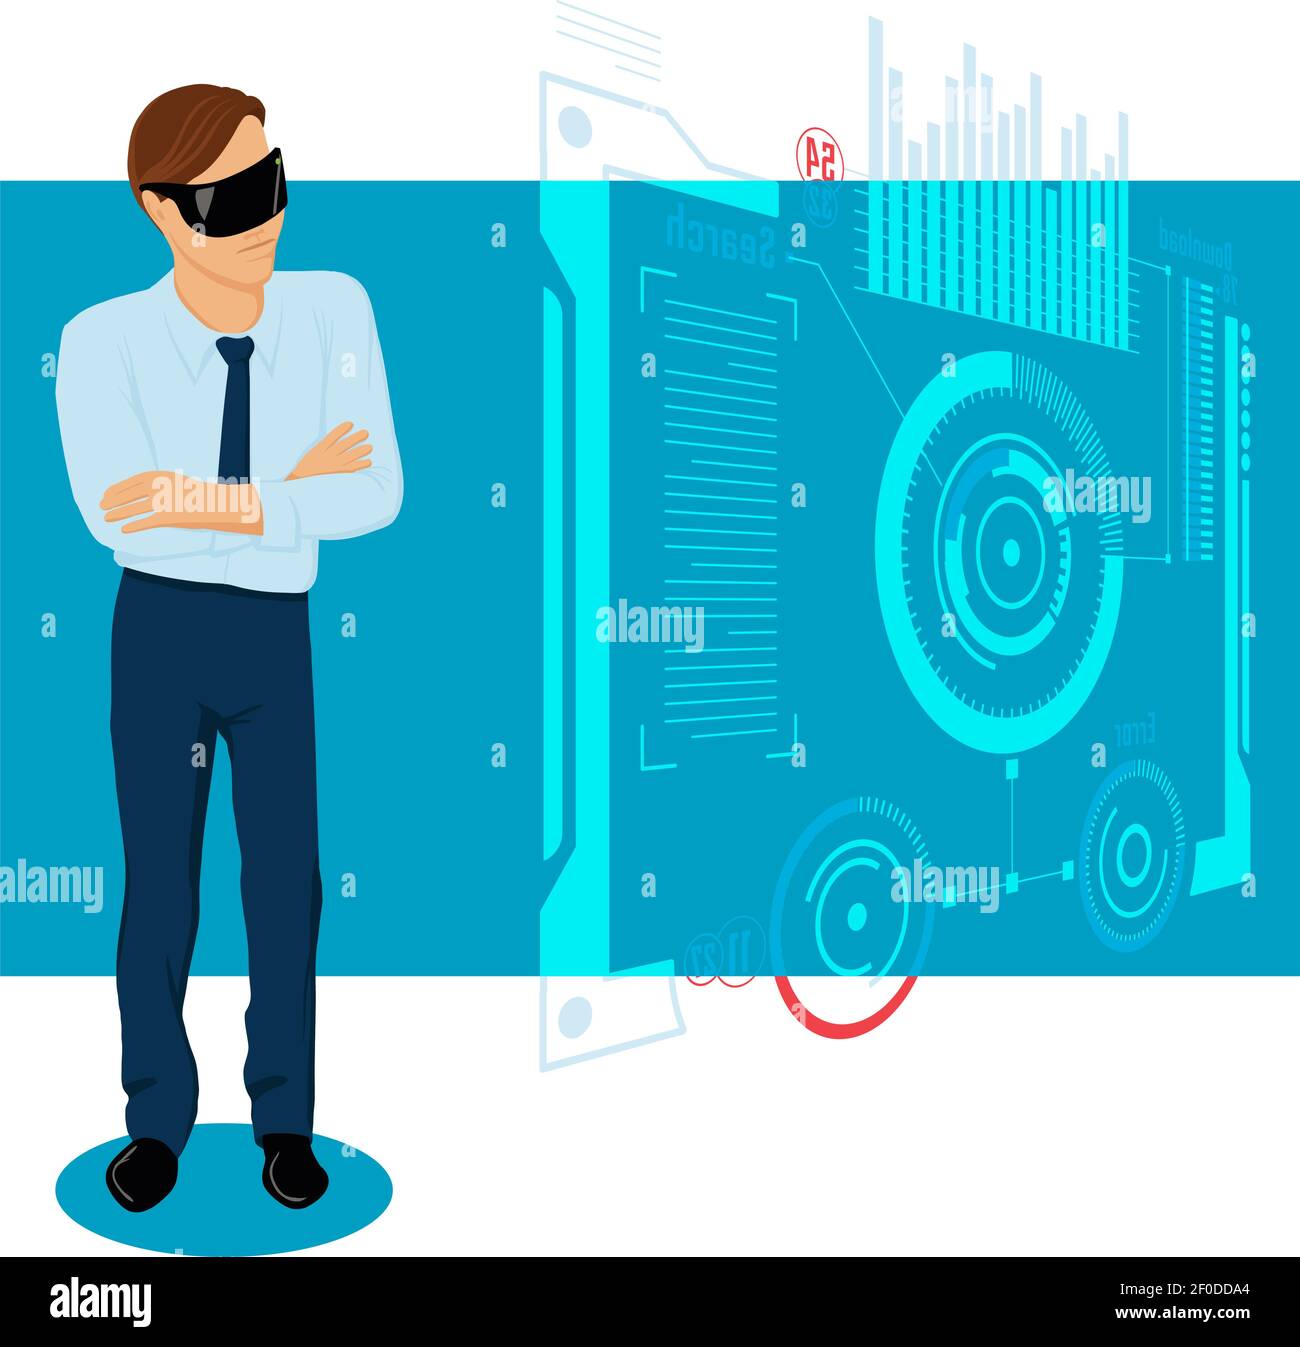 Farbenfroher Hintergrund mit männlichem Charakter in formellem Kleid und VR Helm auf transparente interaktive Panel Vektor-Illustration Stock Vektor